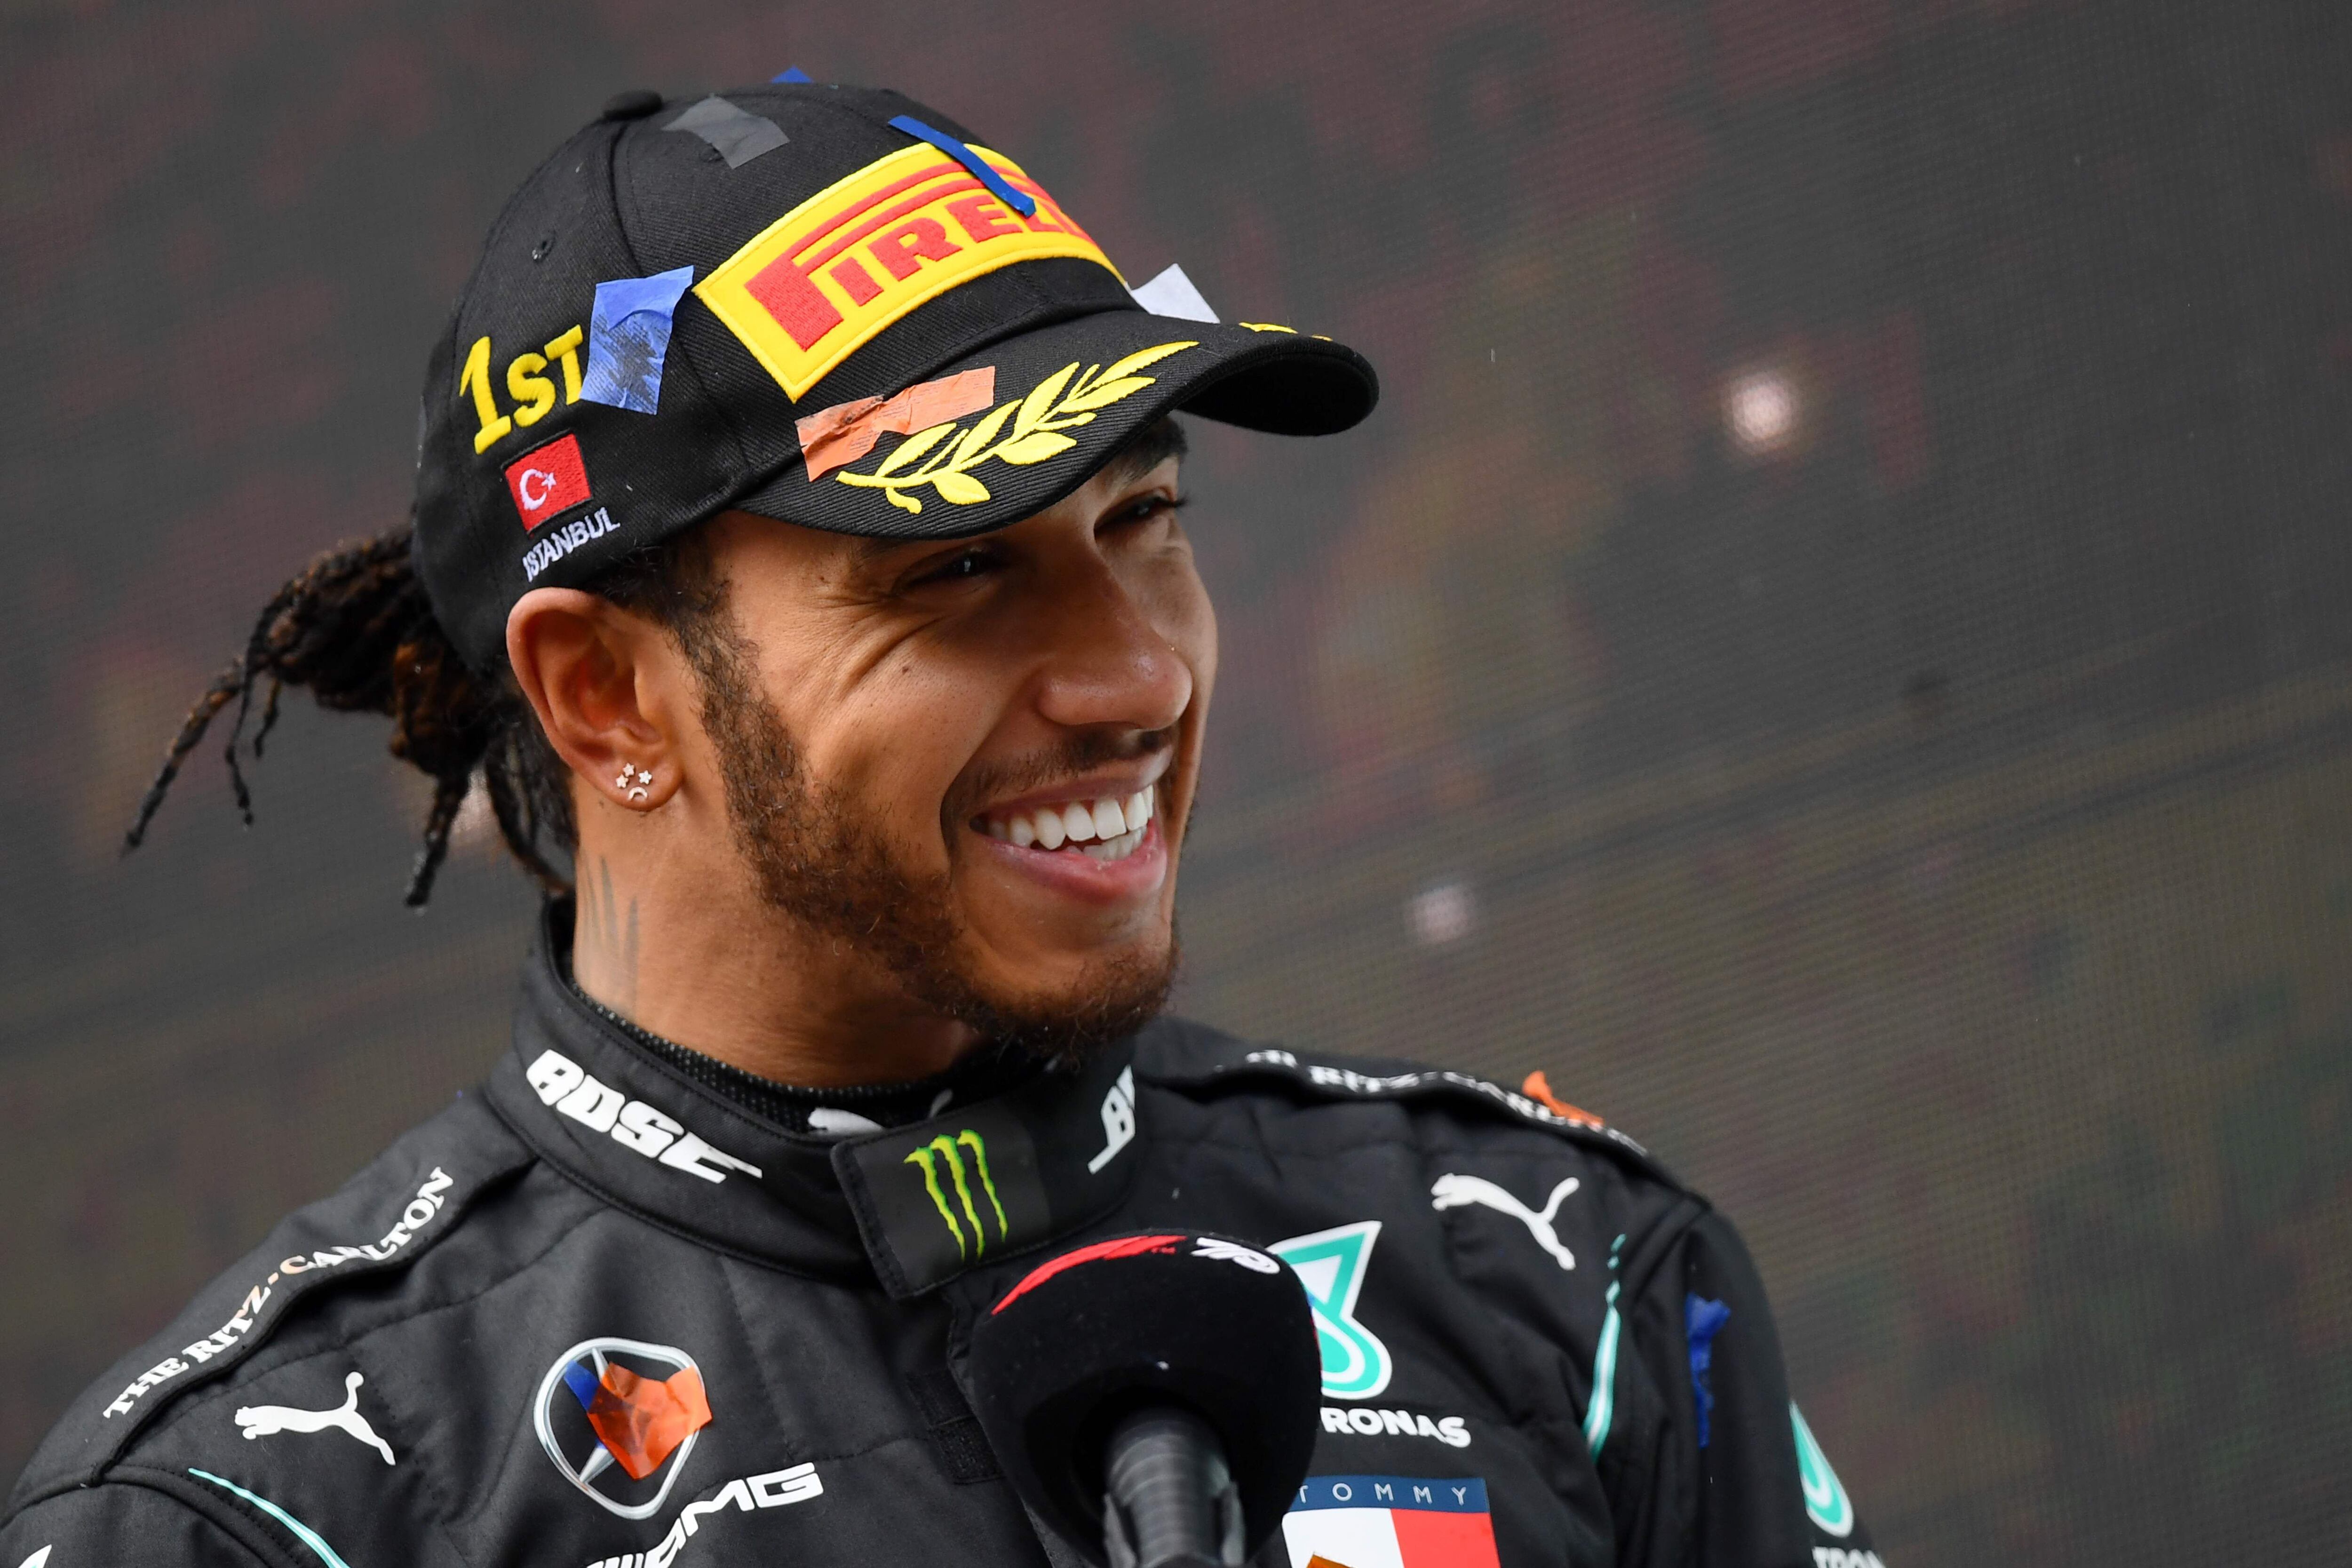 El piloto de carreras Lewis Hamilton compite en la categoría mejor atleta en la elección del hombre más sexi de 'People'.